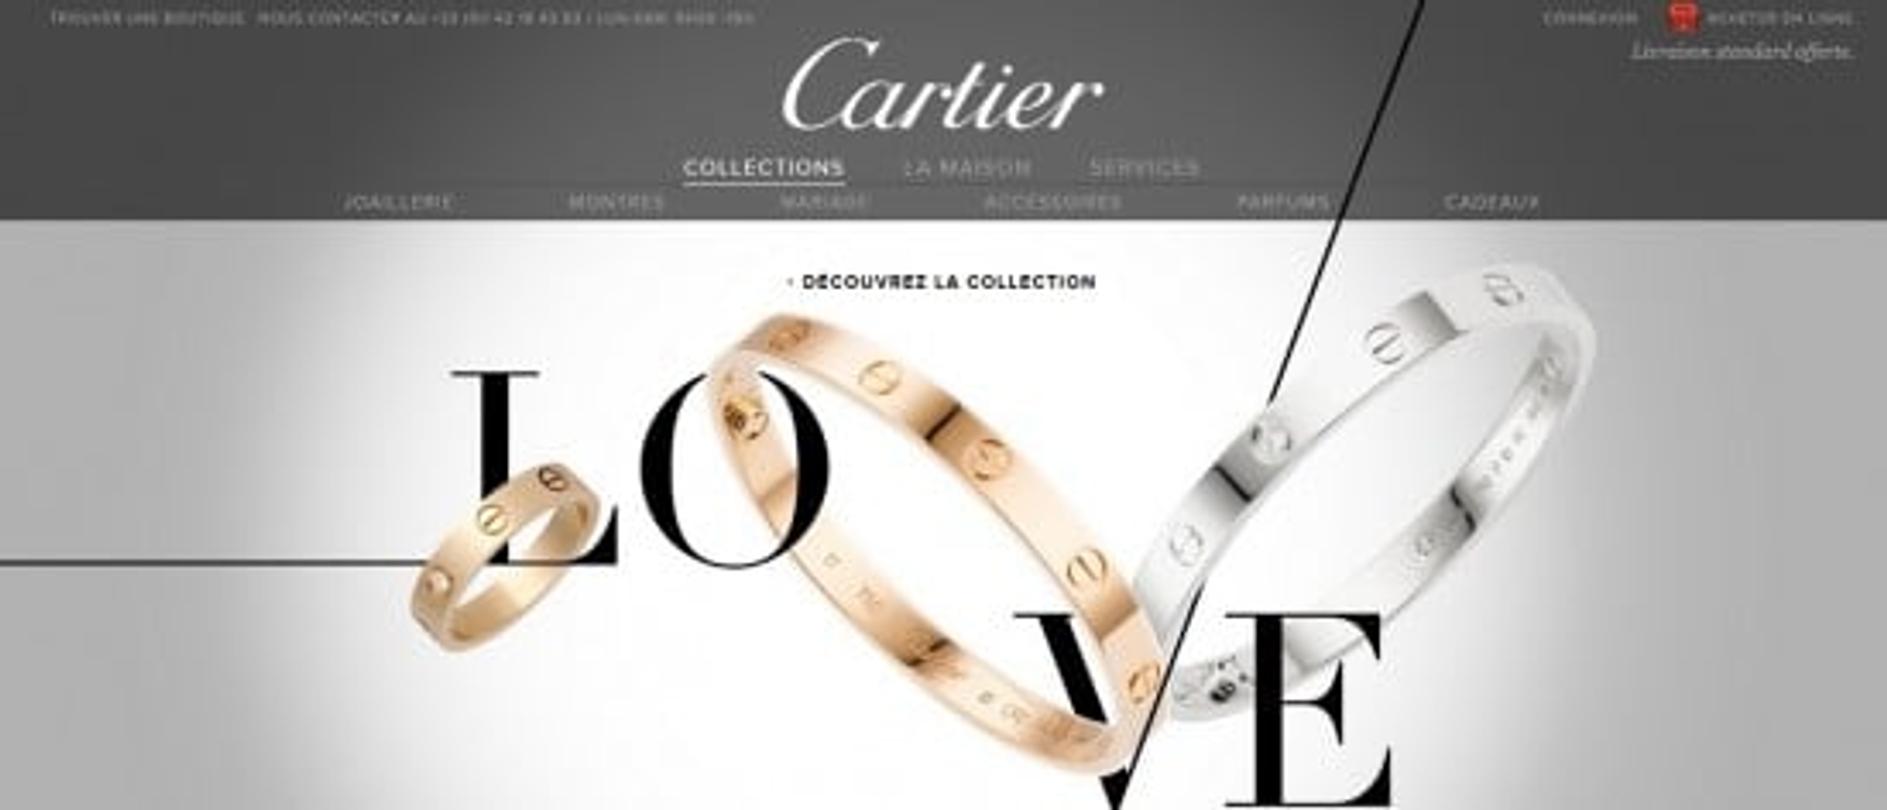 cartier site web